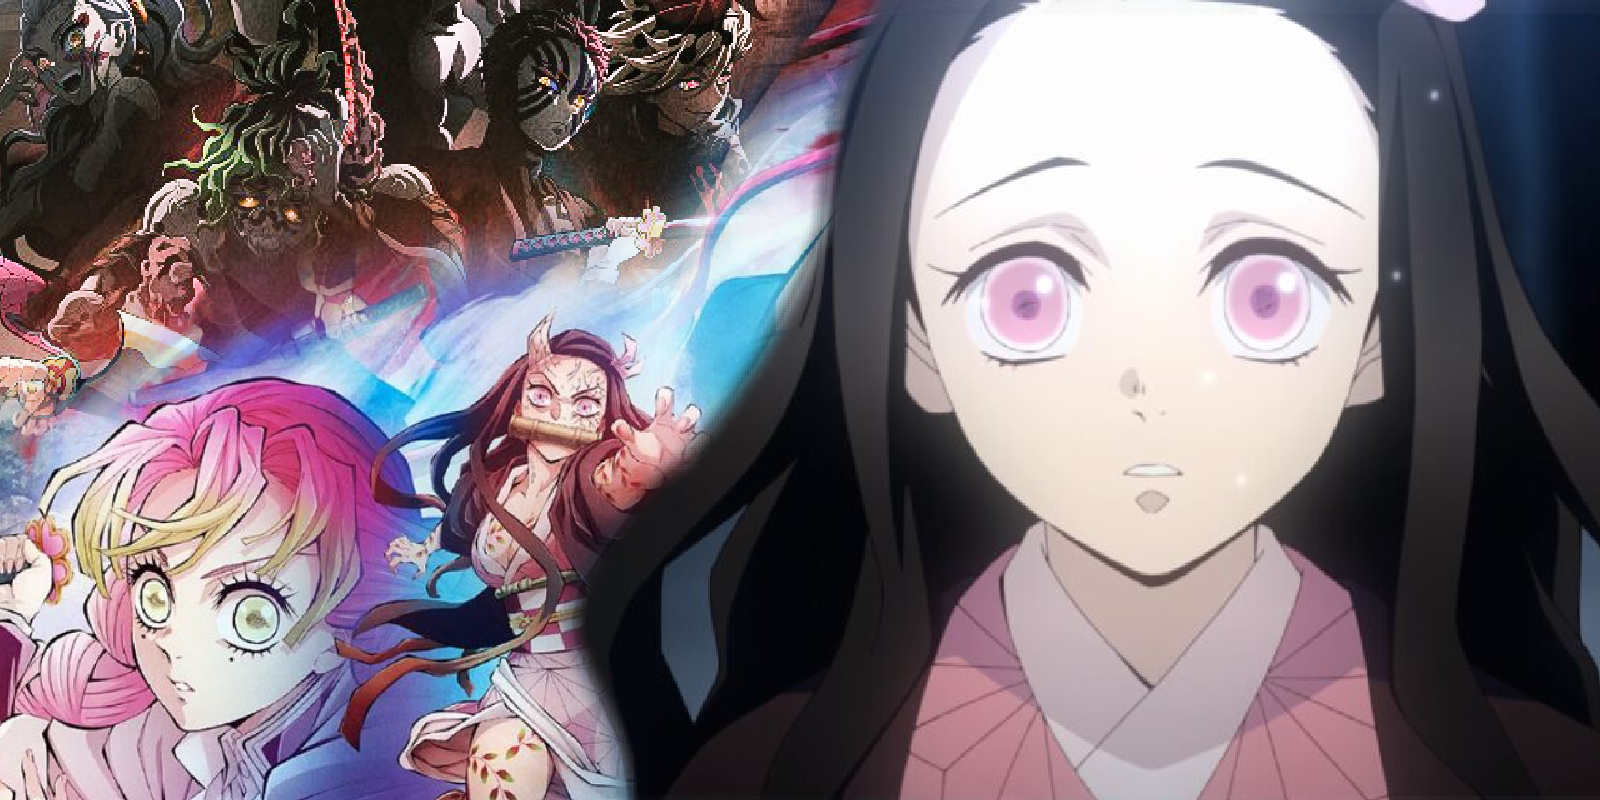 Haganezuka & Tanjiro  Anime demon, Anime, Anime maid